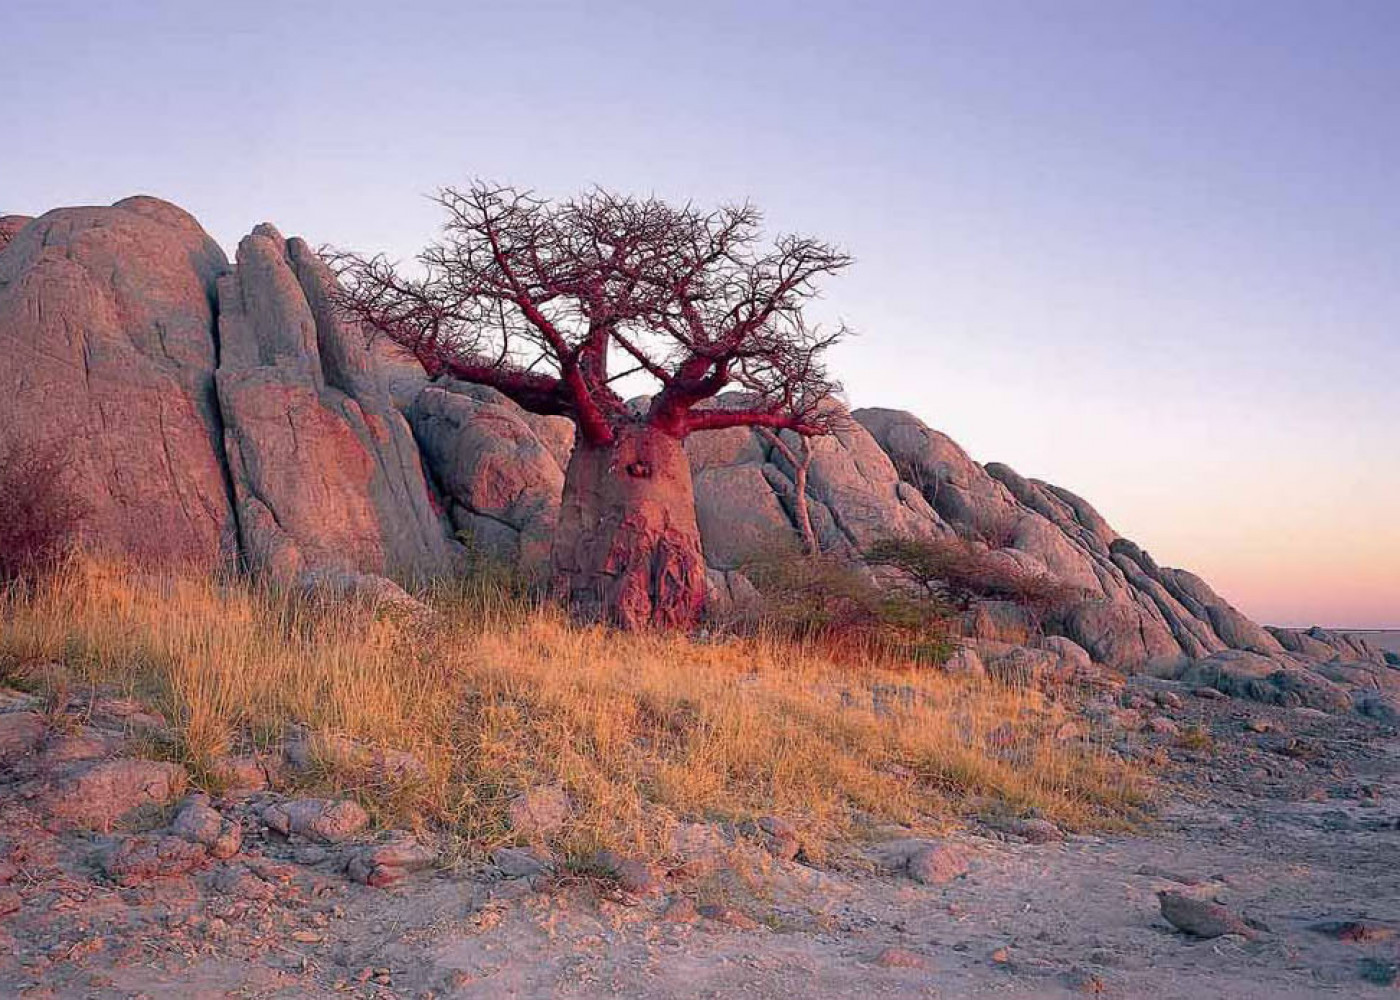 Botswana - Kubu Island